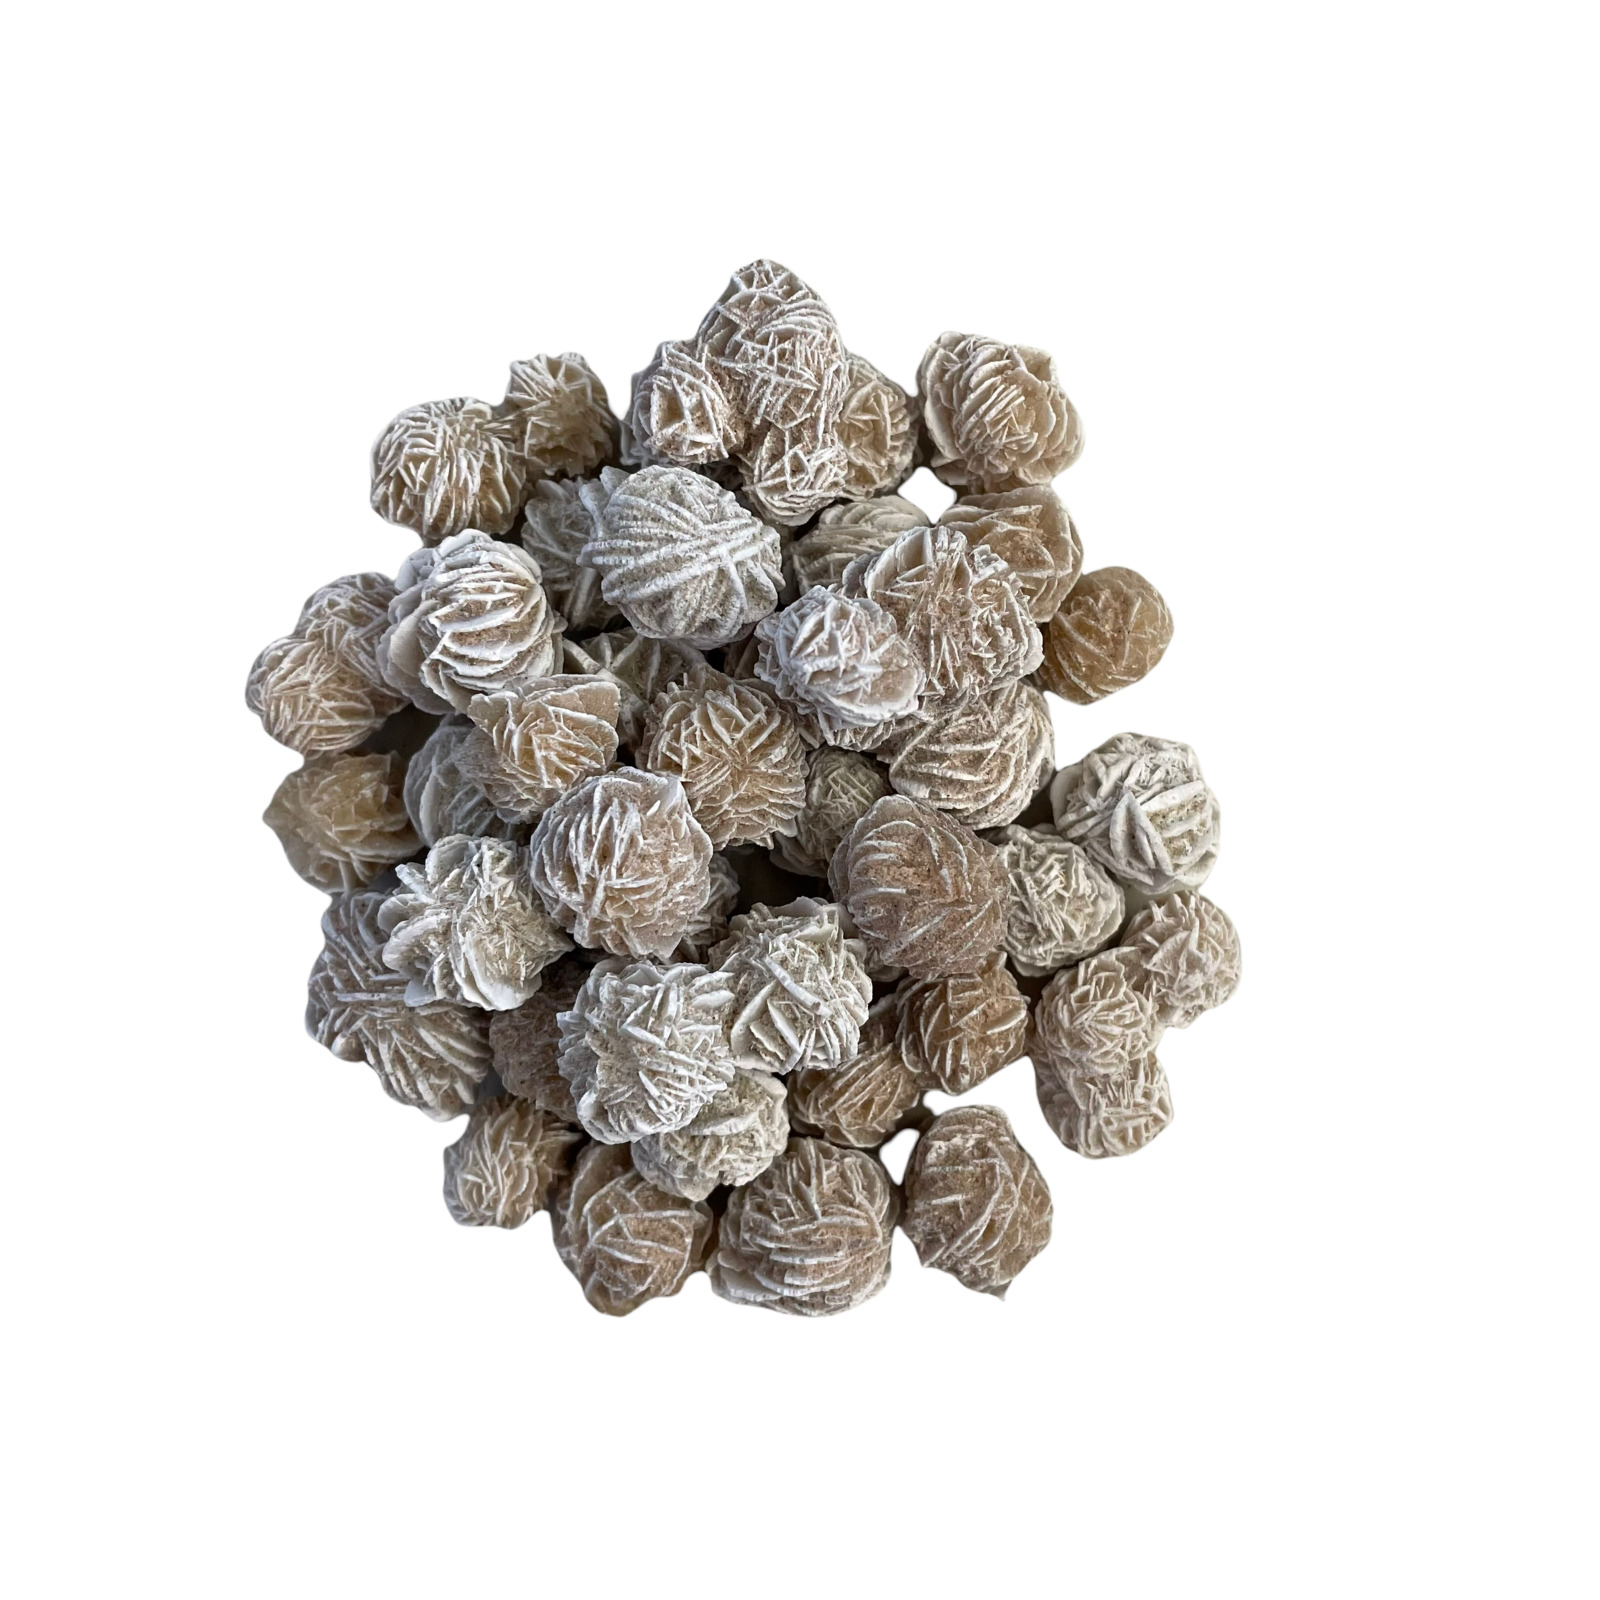 1/4 lb Mini Desert Rose Sand Selenite Gypsum Gemstone Crystal Baryte Specimens